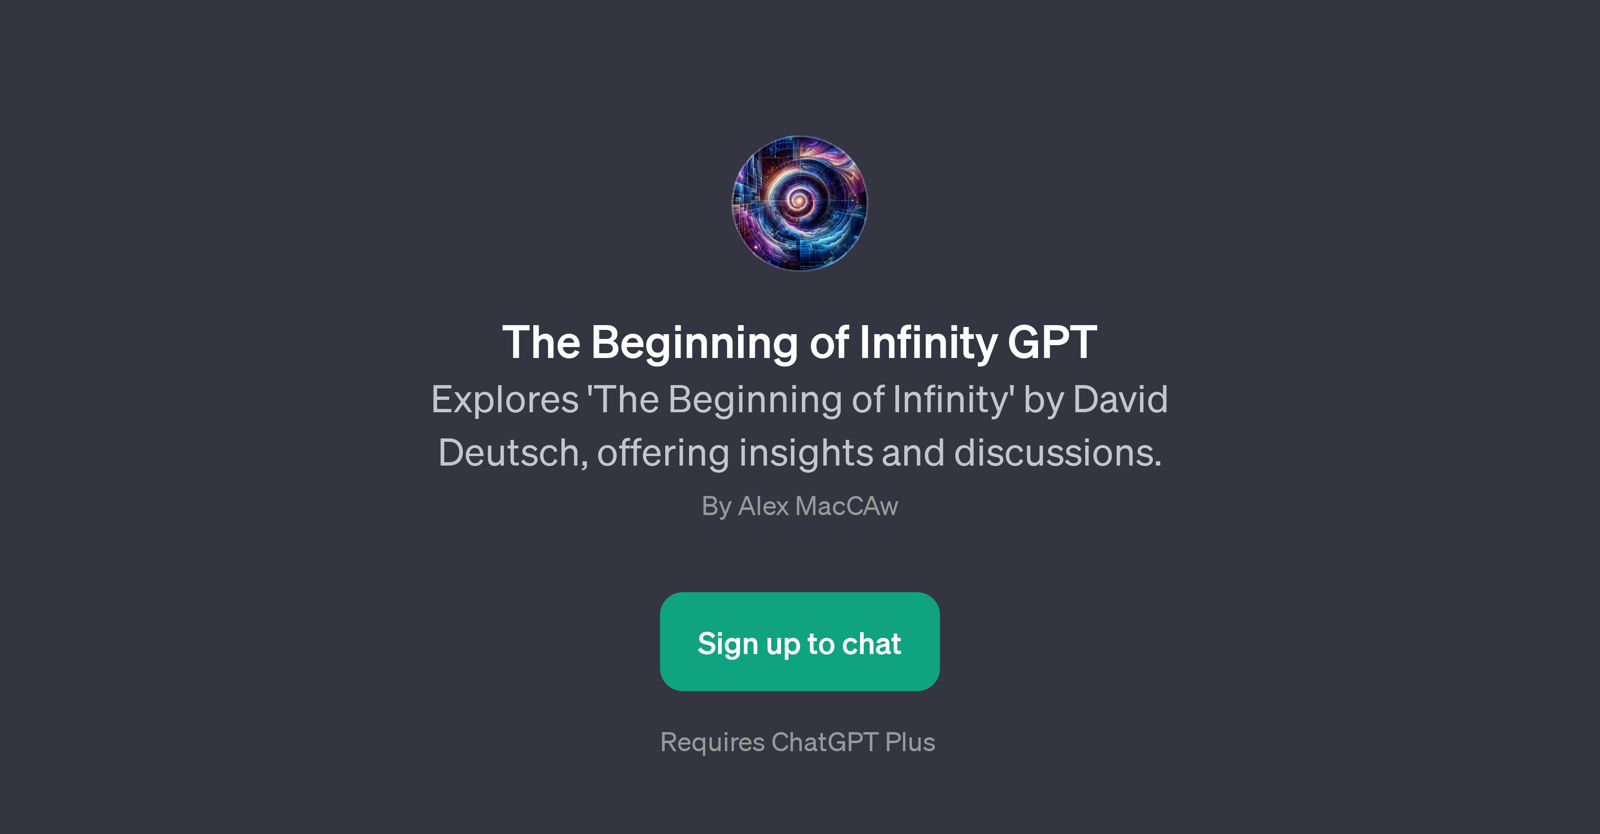 The Beginning of Infinity GPT website